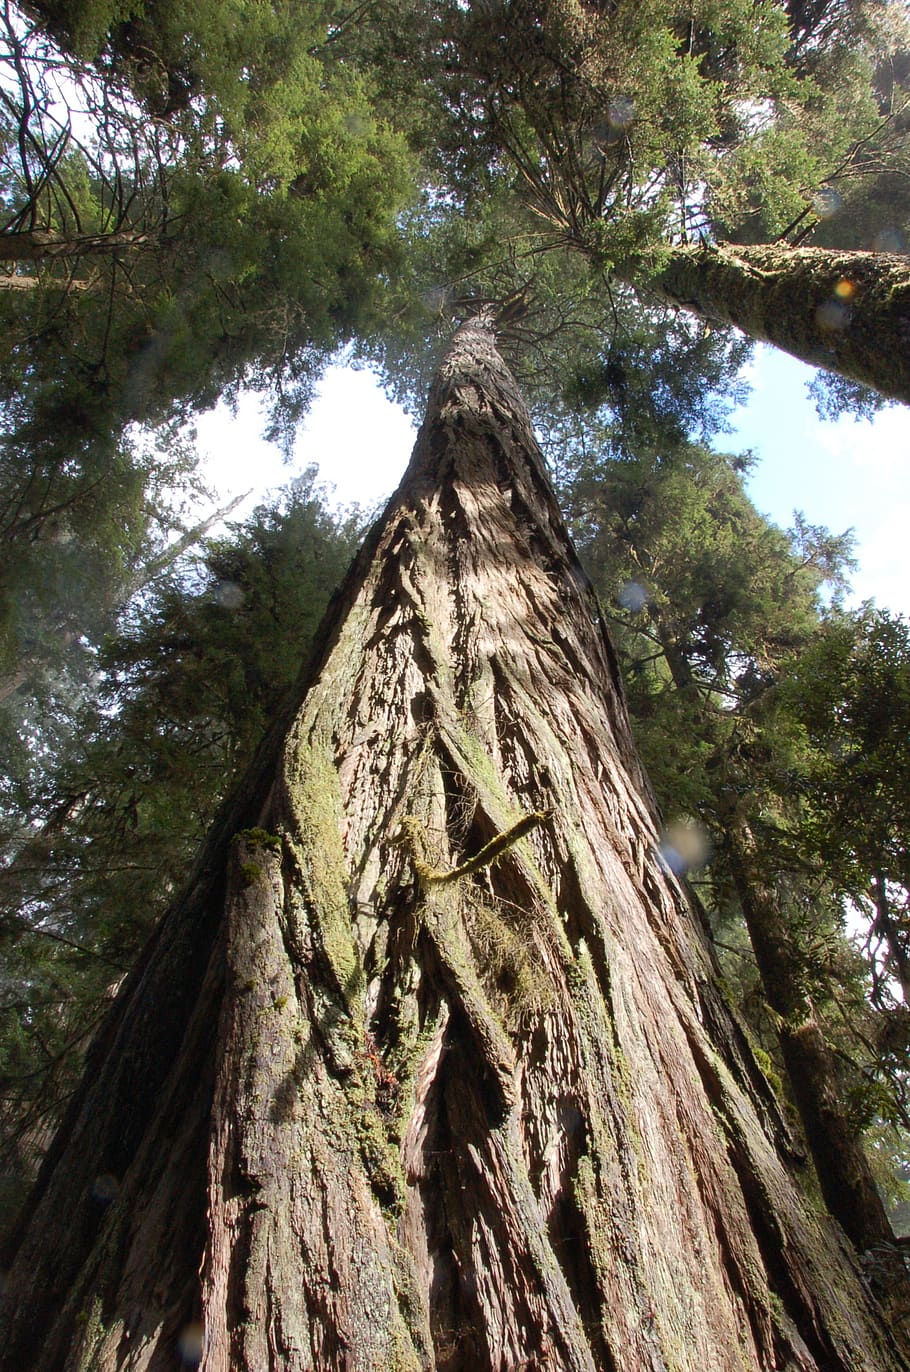 sequoias da califórnia, sequoias, árvores, floresta, bosques, árvores gigantes, árvores altas, árvore, visão de baixo ângulo, planta